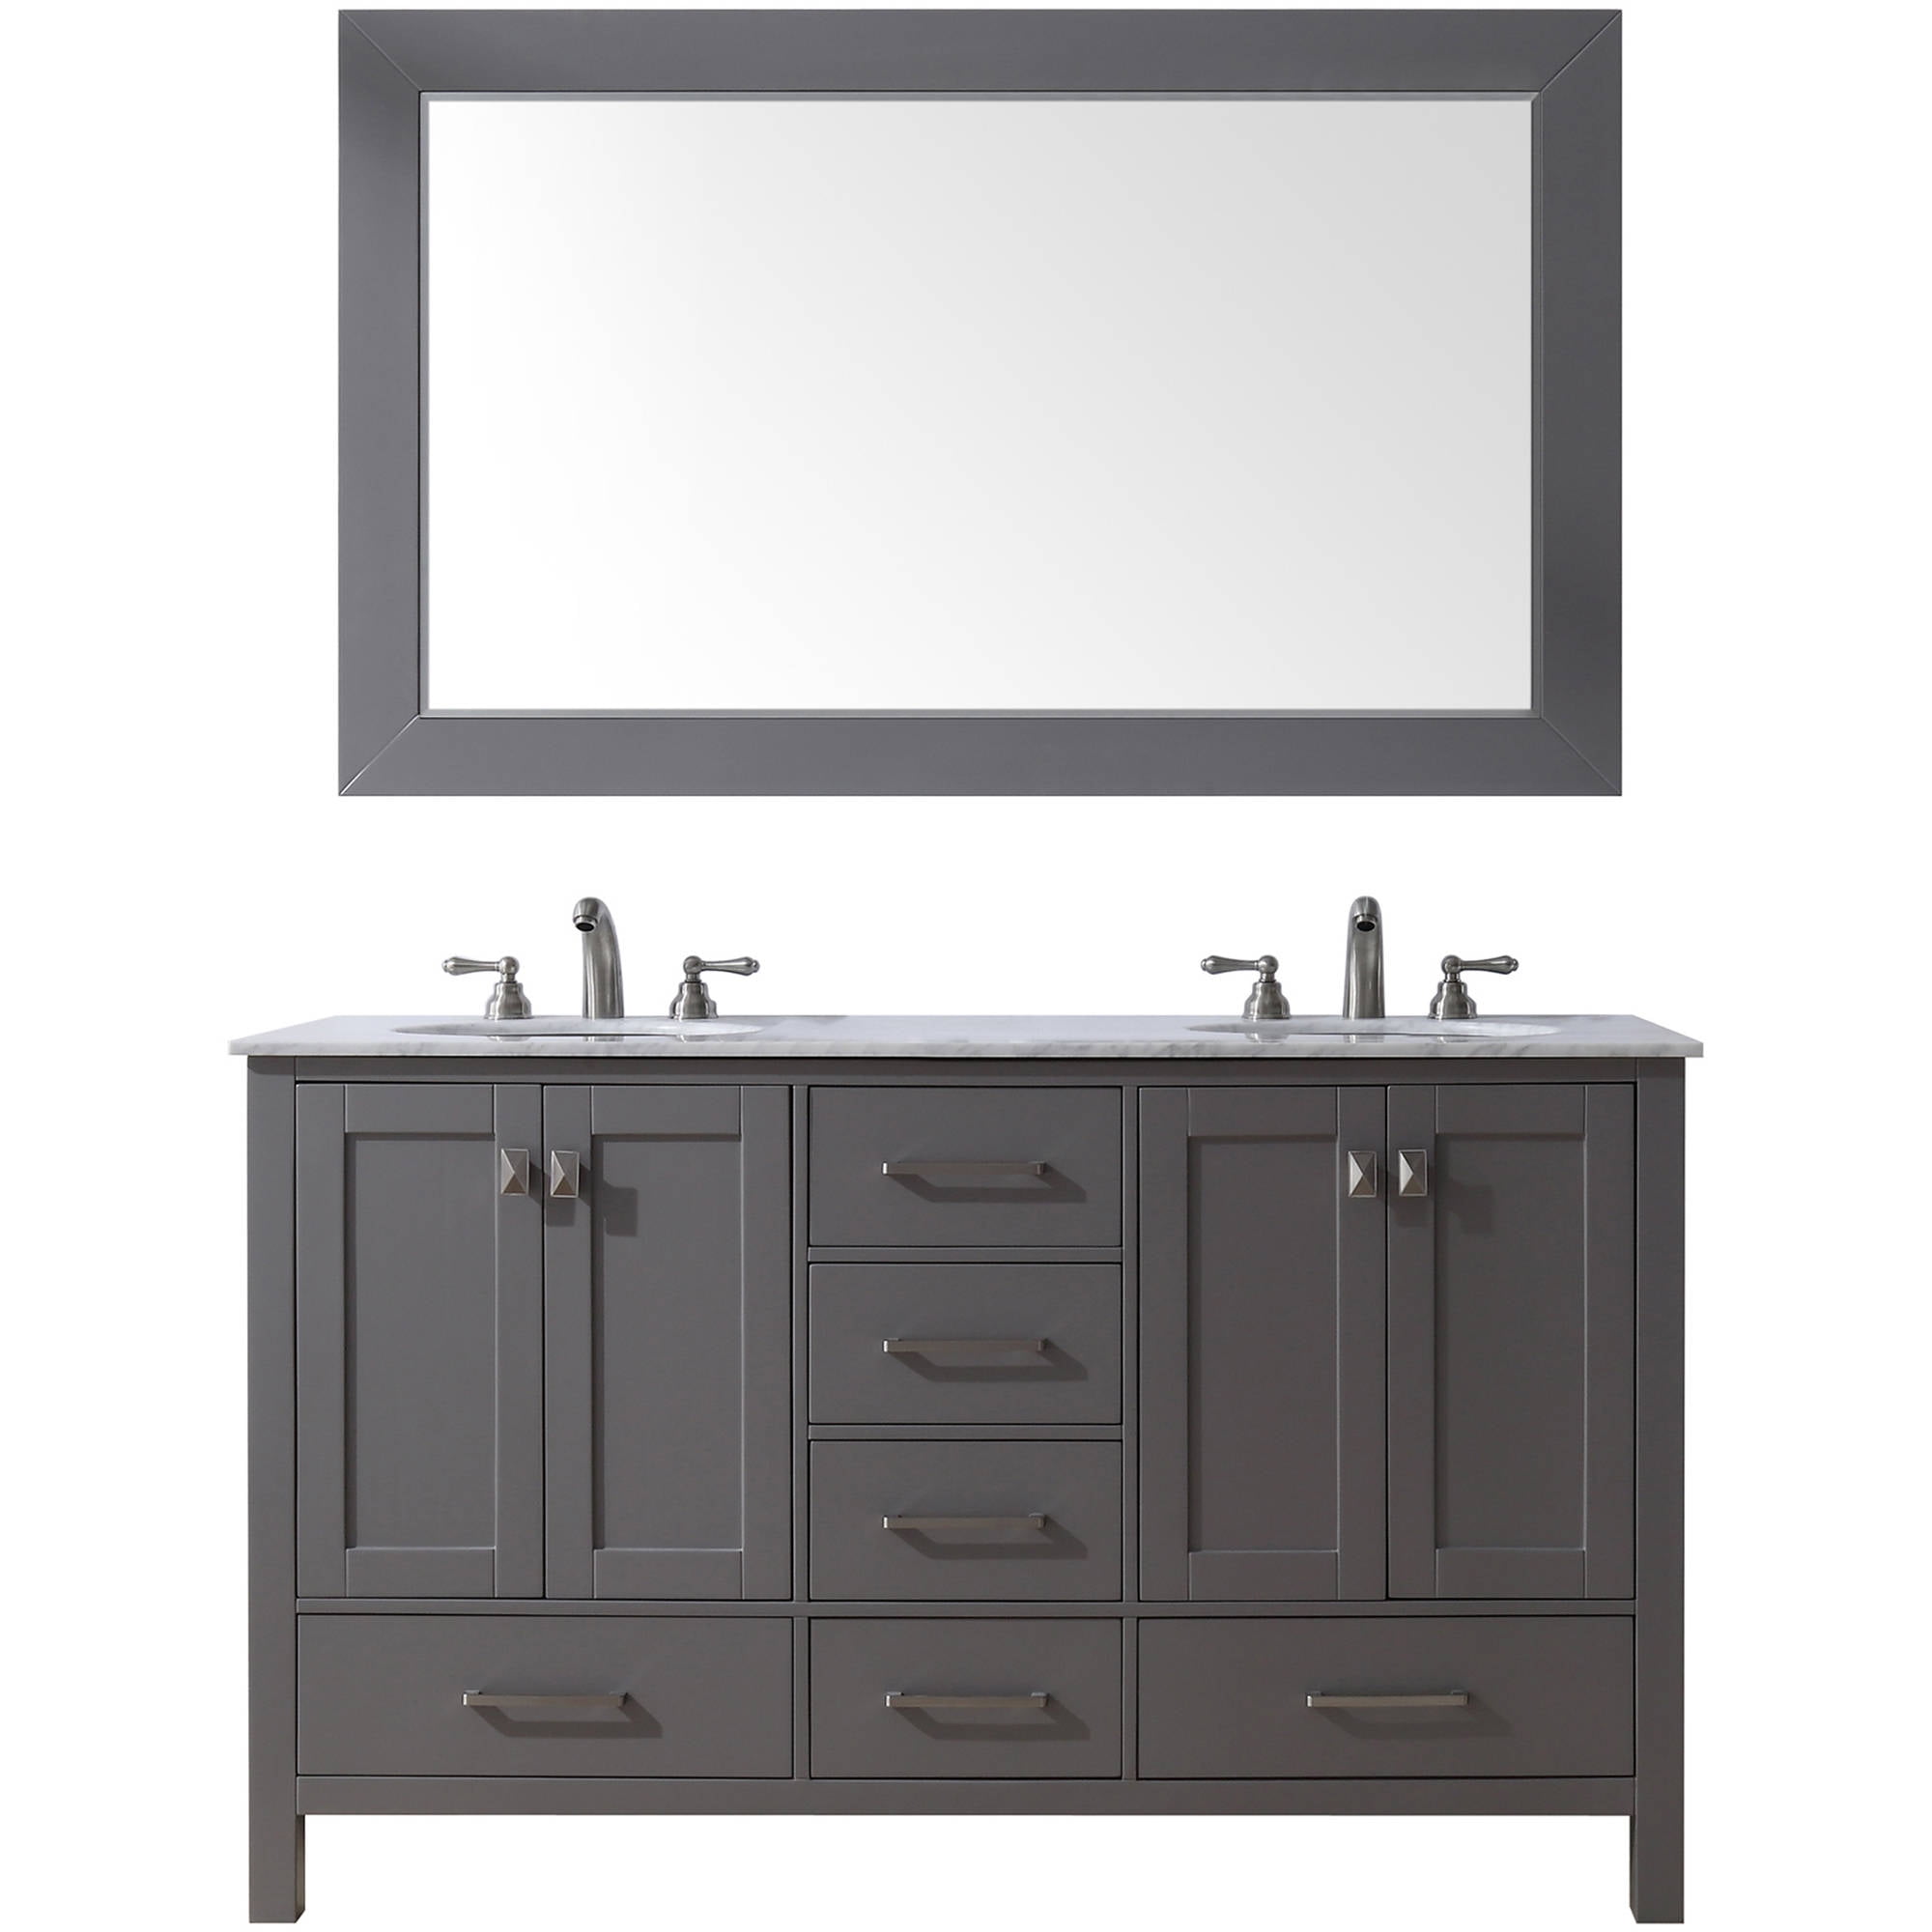 Ove Decors Tahoe 60 In 2 Mirror Double, Ove Decors Tahoe 60 In Bathroom Vanity With Mirror Dove Grey